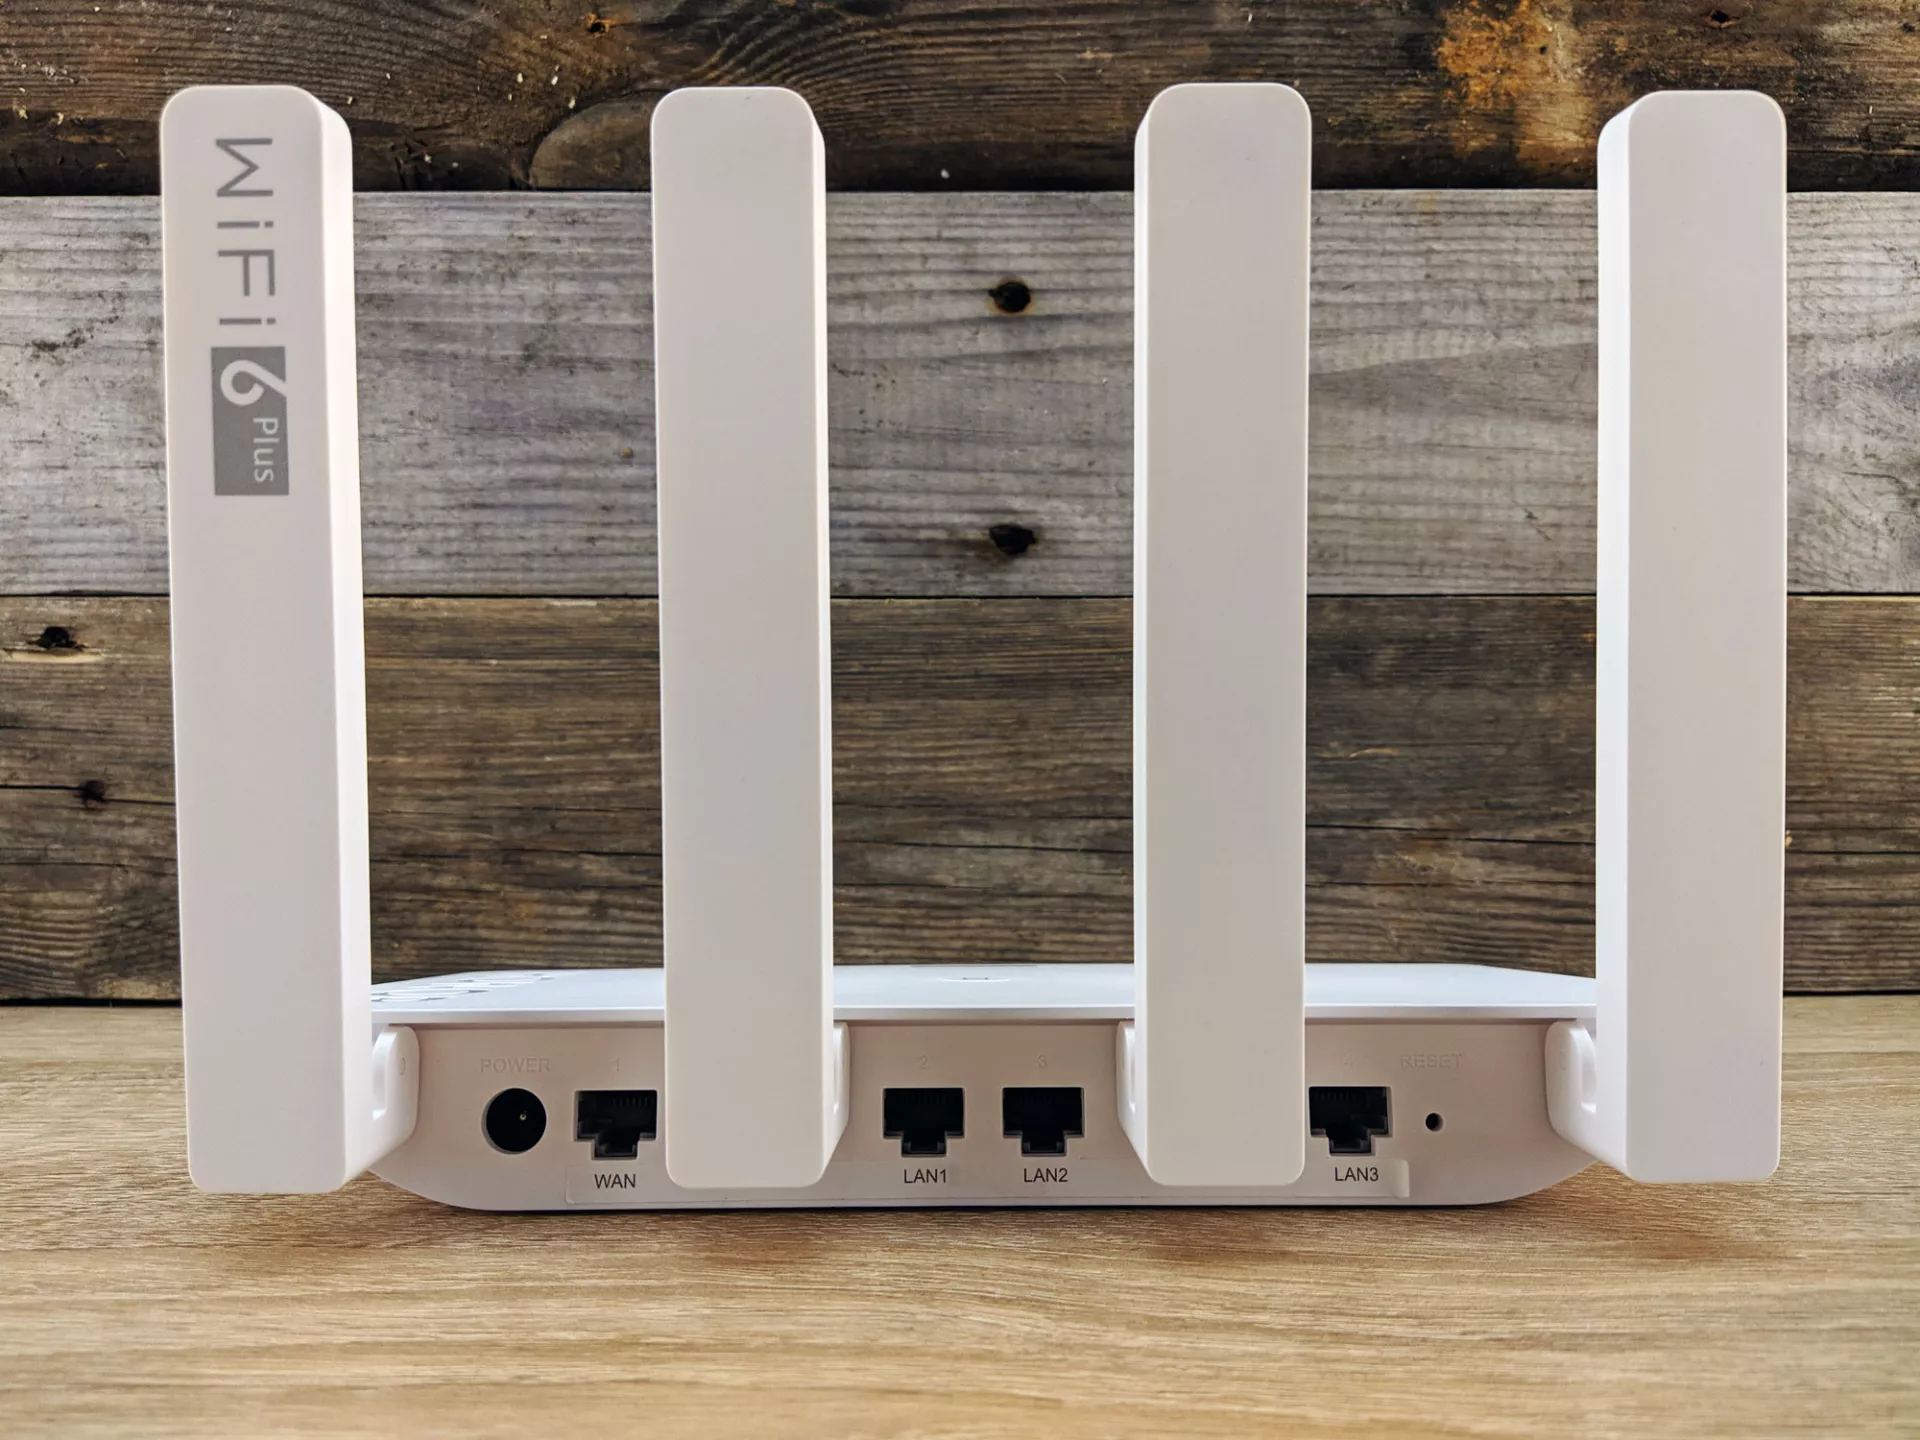 Тест-драйв роутера Honor Router 3 с Wi-Fi 6